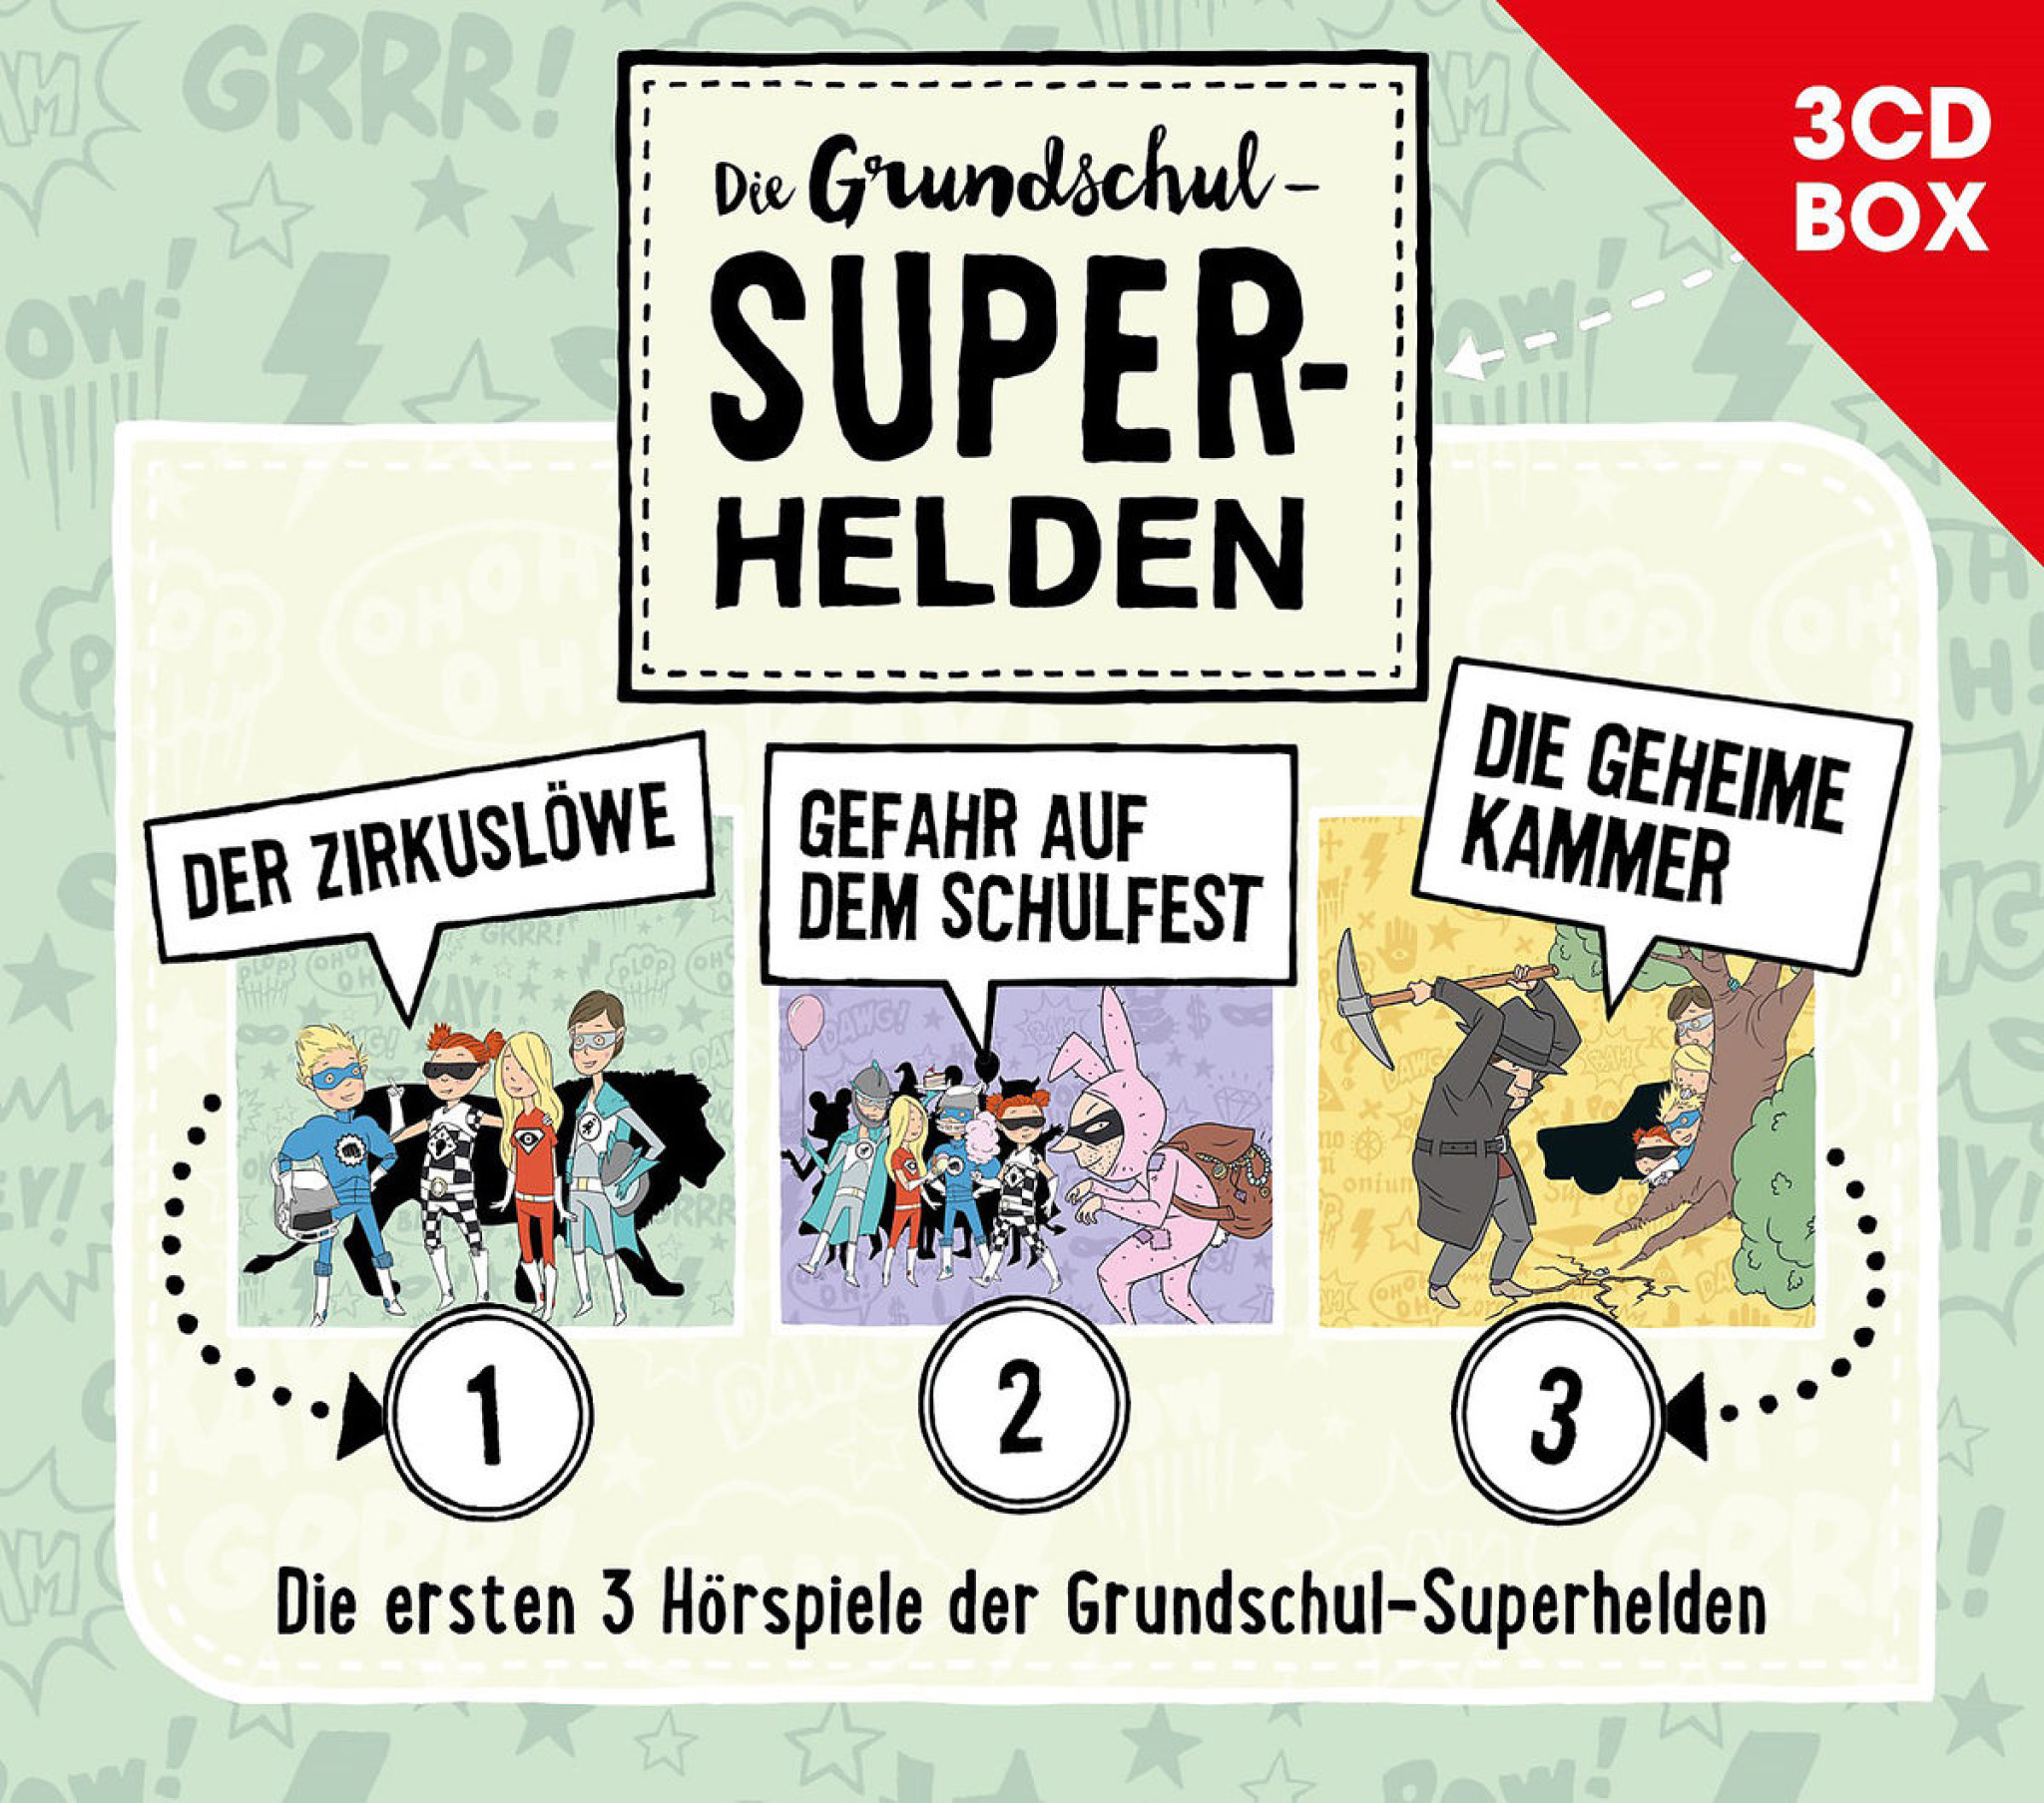 Die Grundschul-Superhelden 3-CD-Box Vol. 1